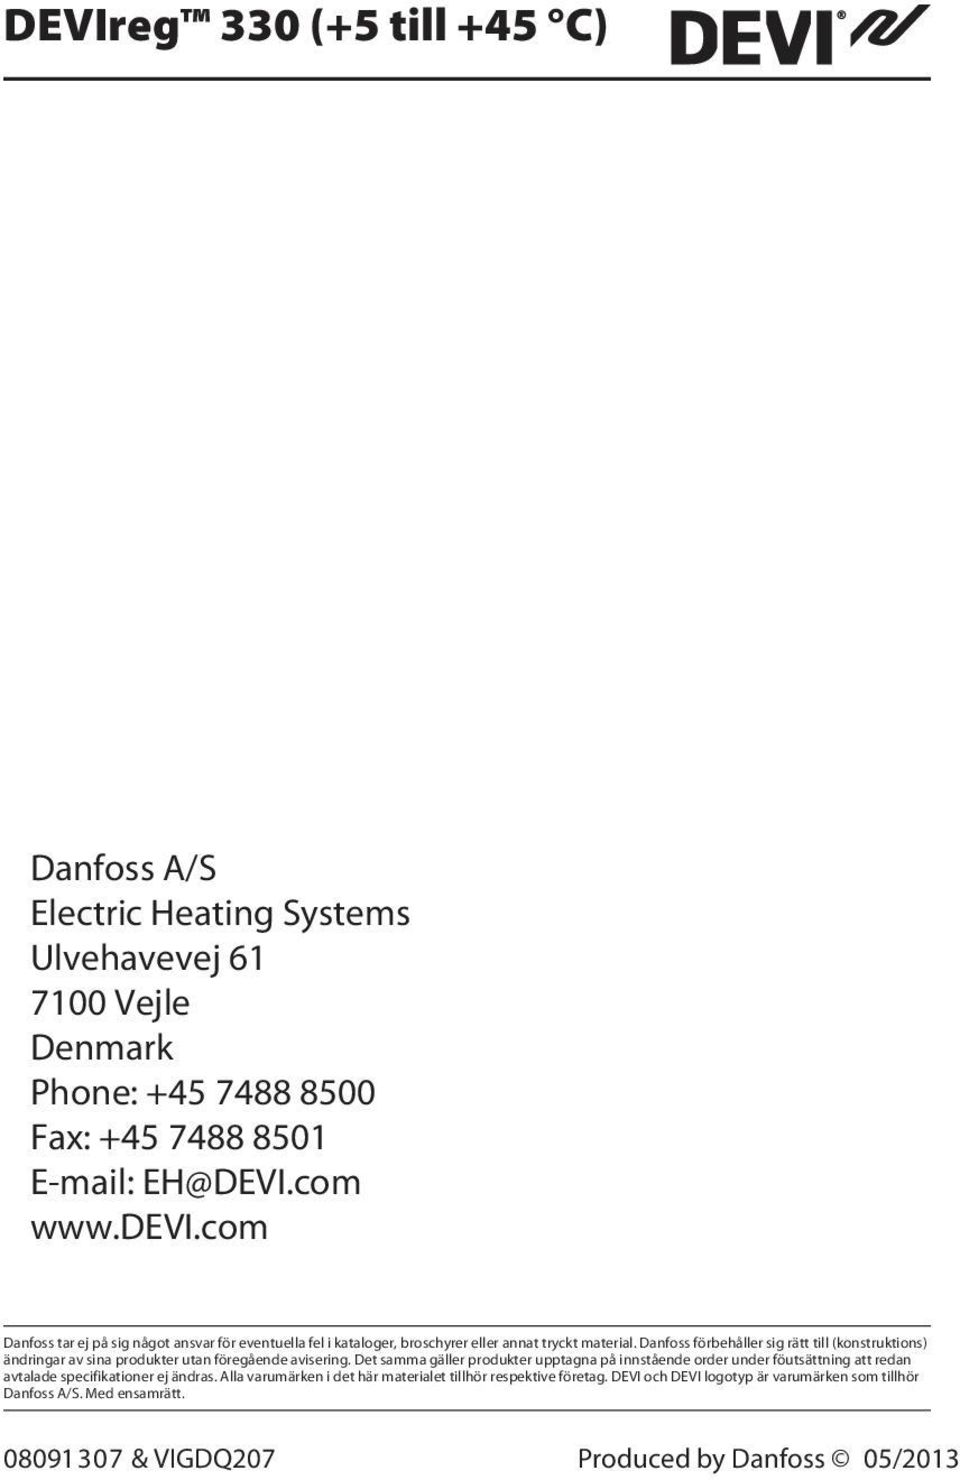 Danfoss förbehåller sig rätt till (konstruktions) ändringar av sina produkter utan föregående avisering.